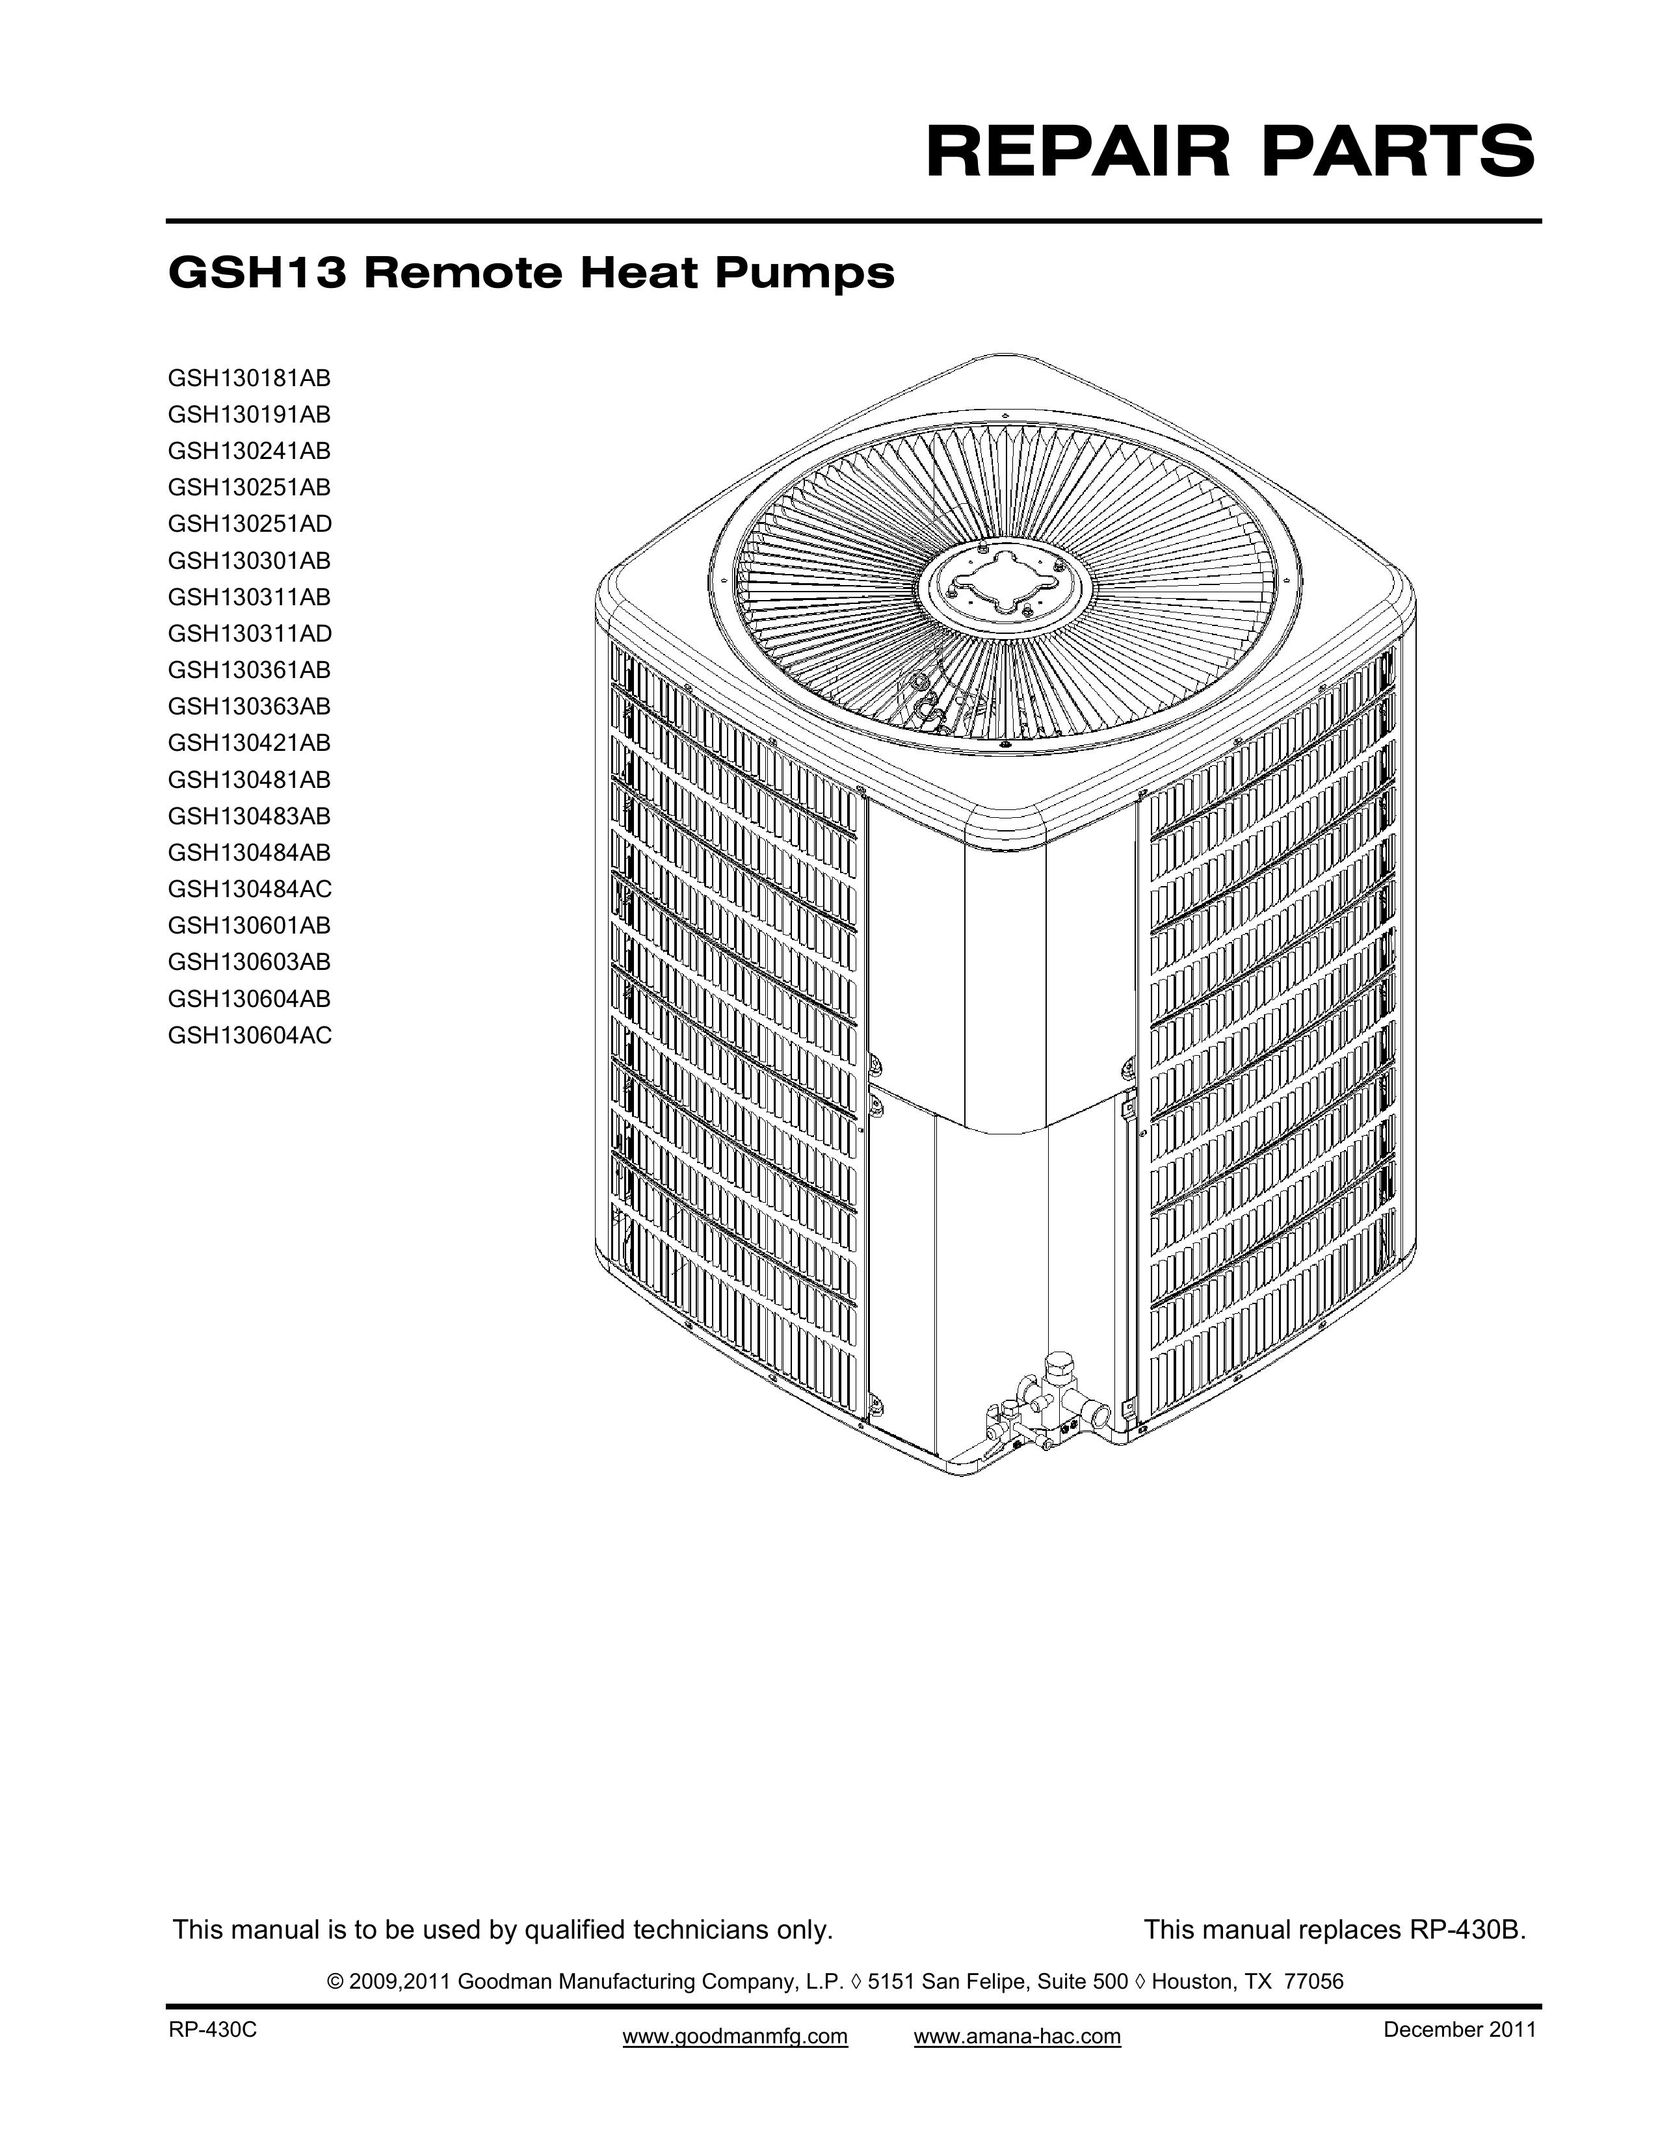 Goodman Mfg GSH13 Remote Heat Pump Heat Pump User Manual